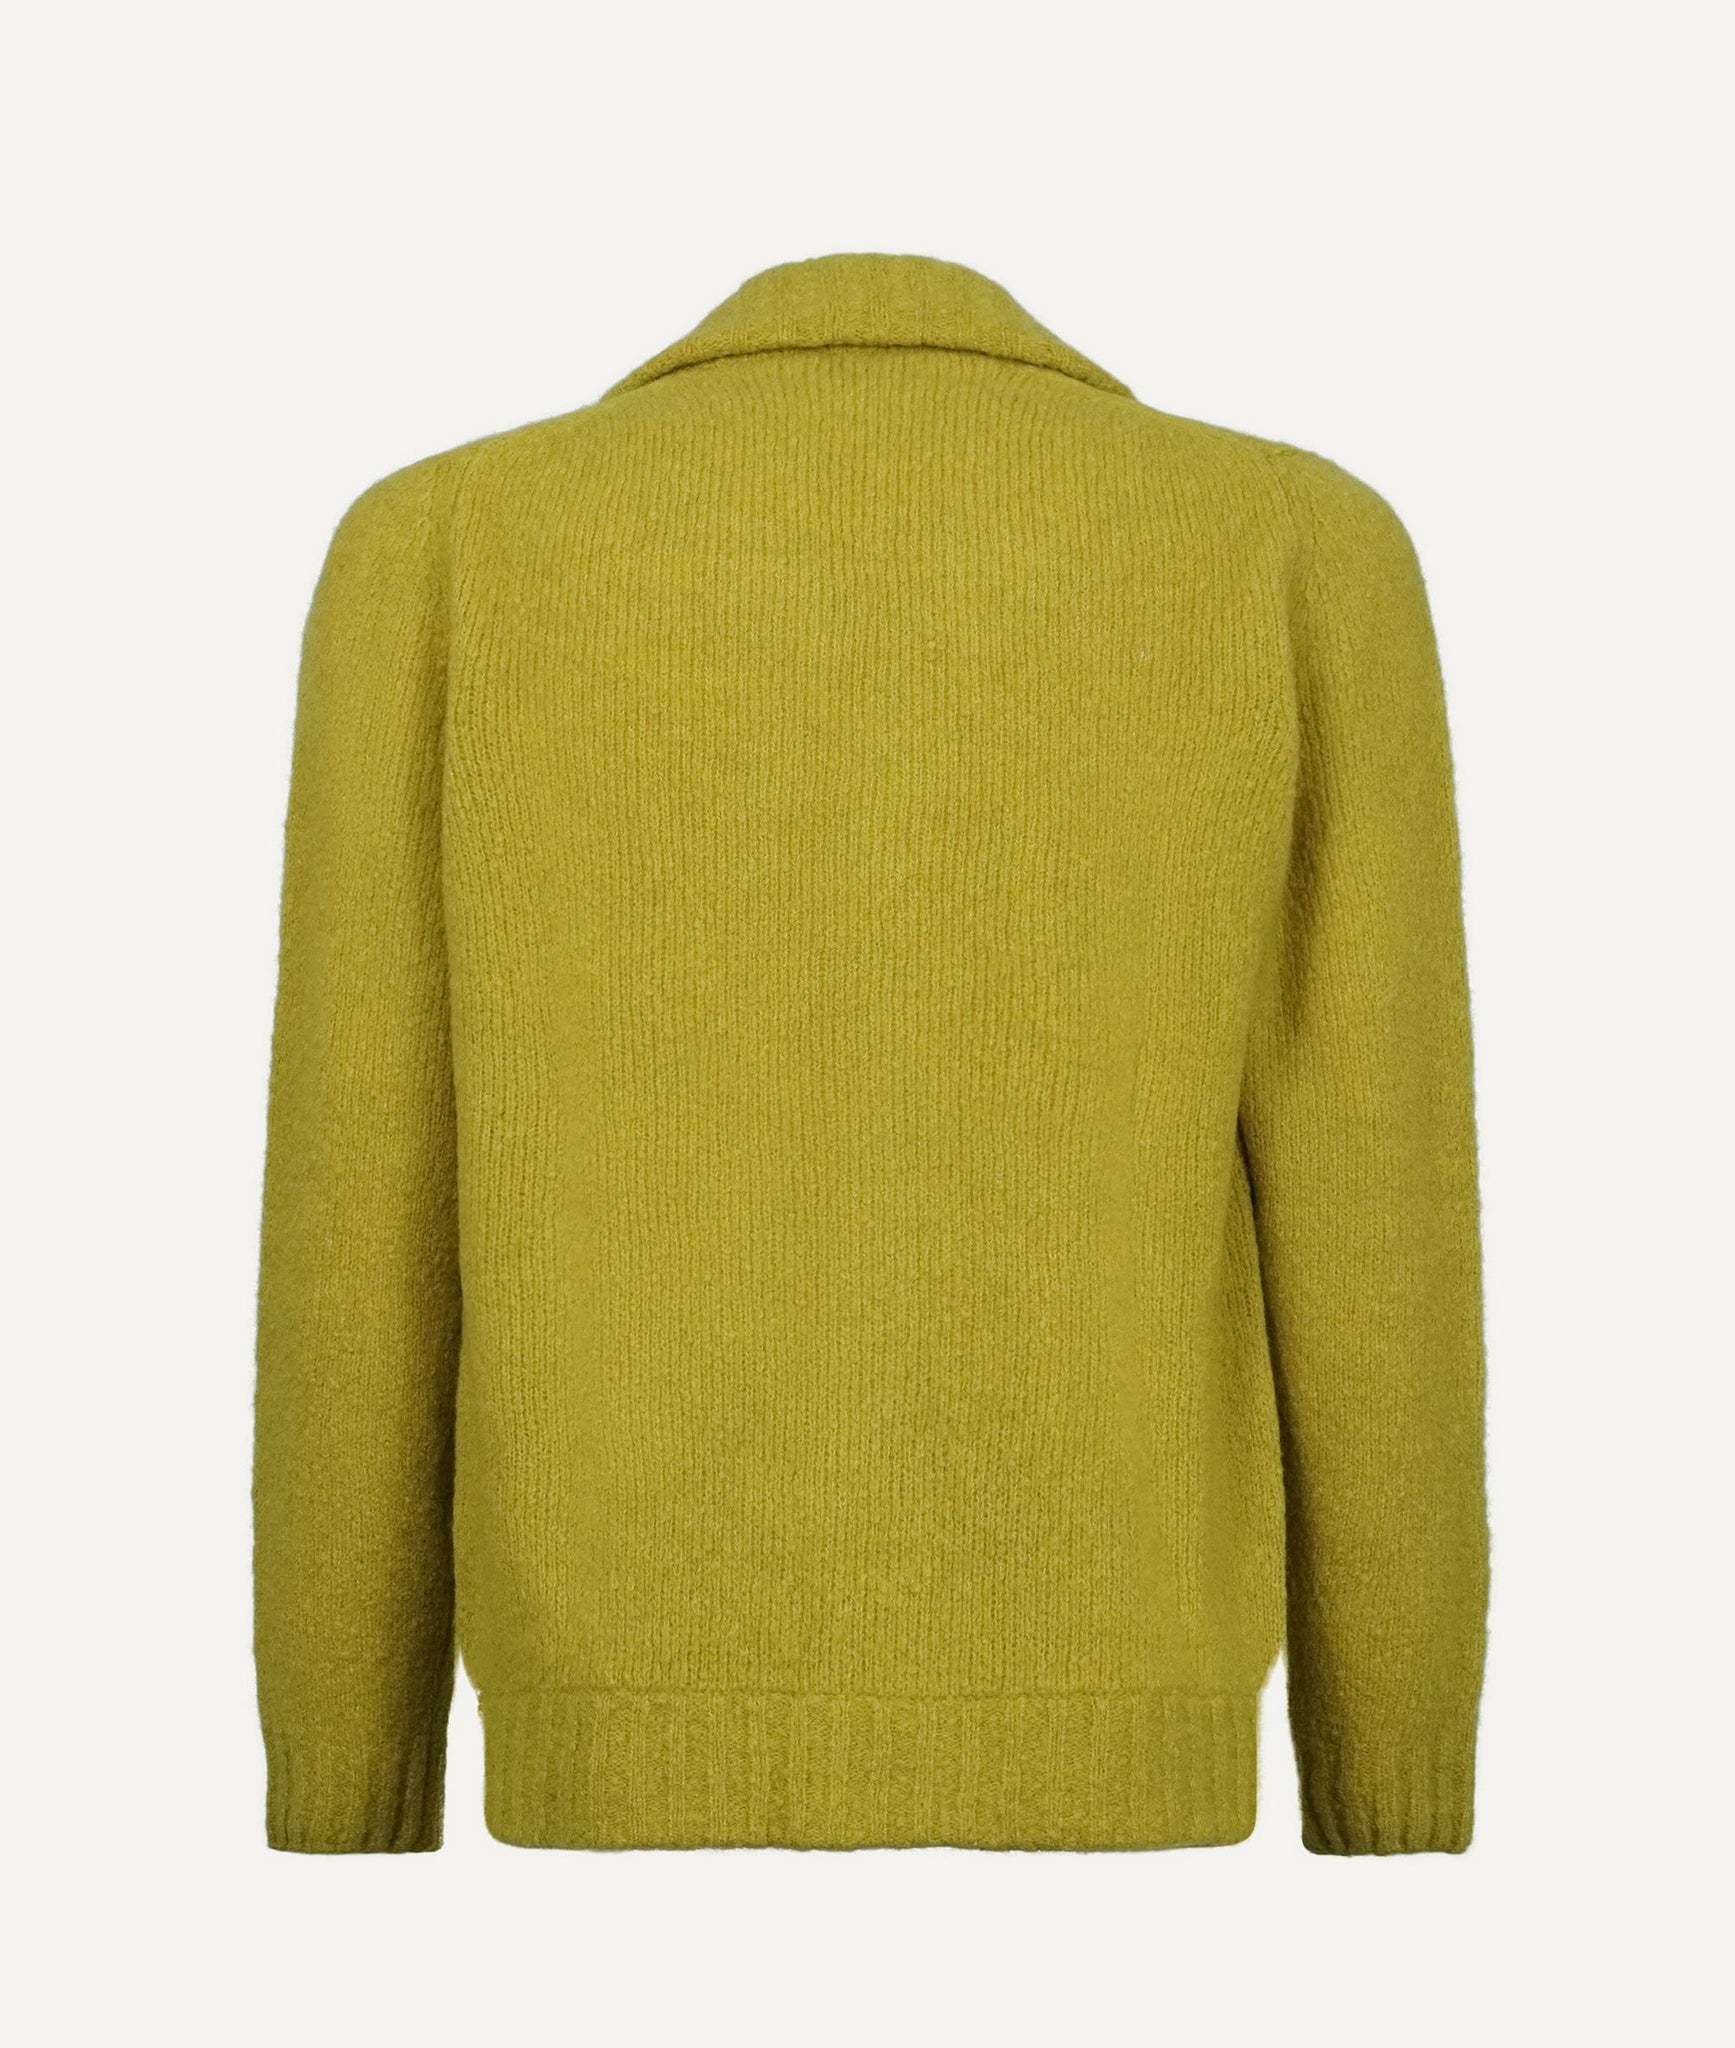 Fedeli - Sweater in Virgin Wool & Cashmere